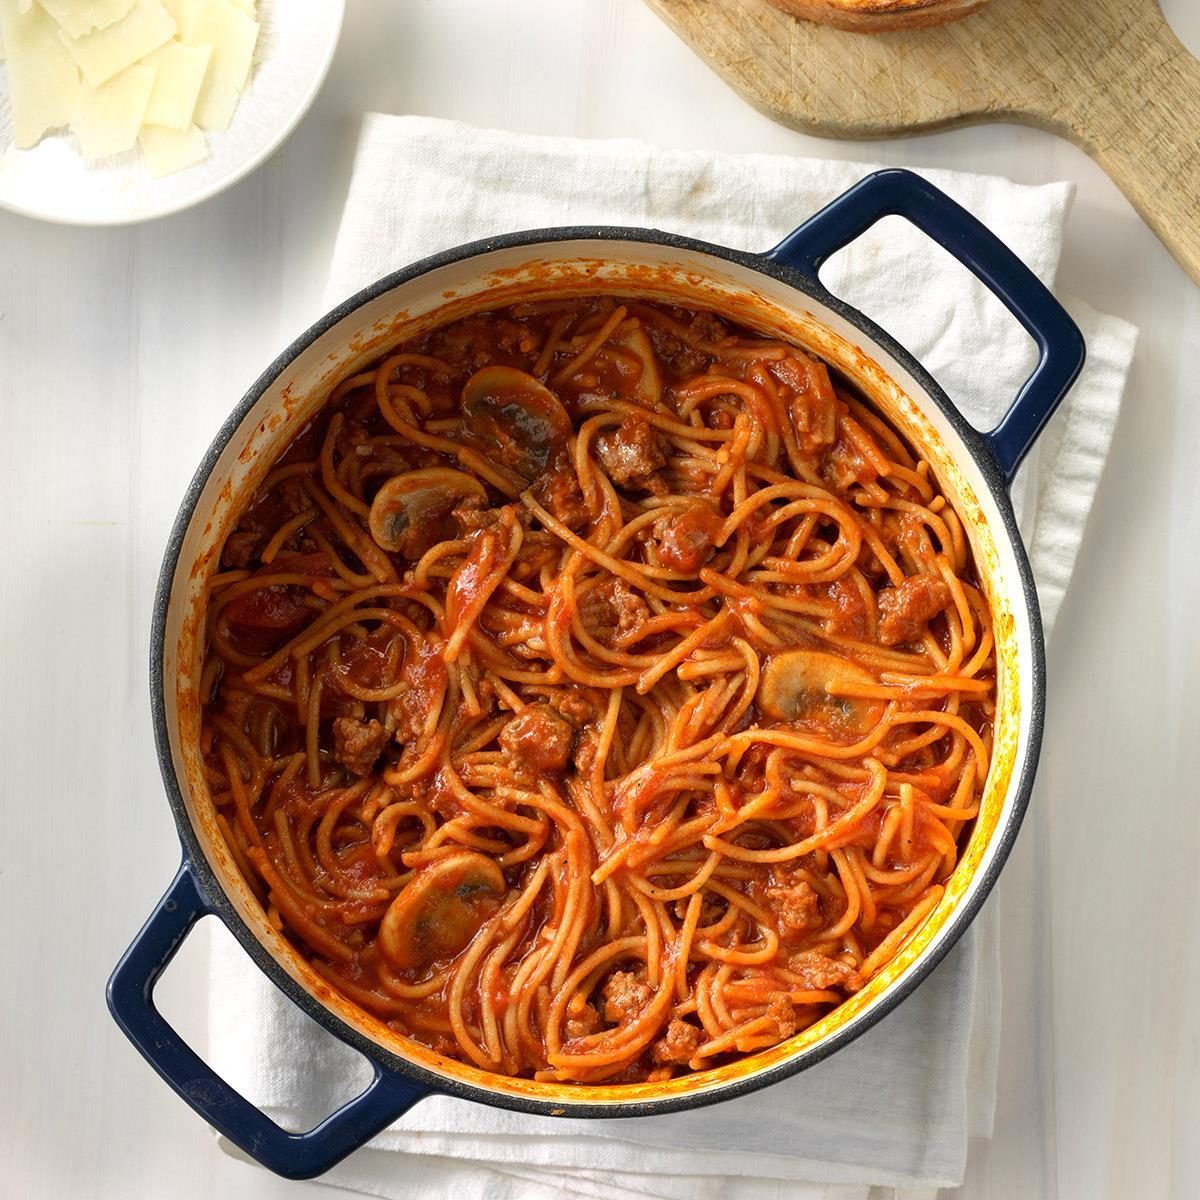 https://www.tasteofhome.com/wp-content/uploads/2018/01/One-Pot-Spaghetti-Dinner_EXPS_OPBZ18_148933_C06_29_5b-4.jpg?fit=700%2C1024